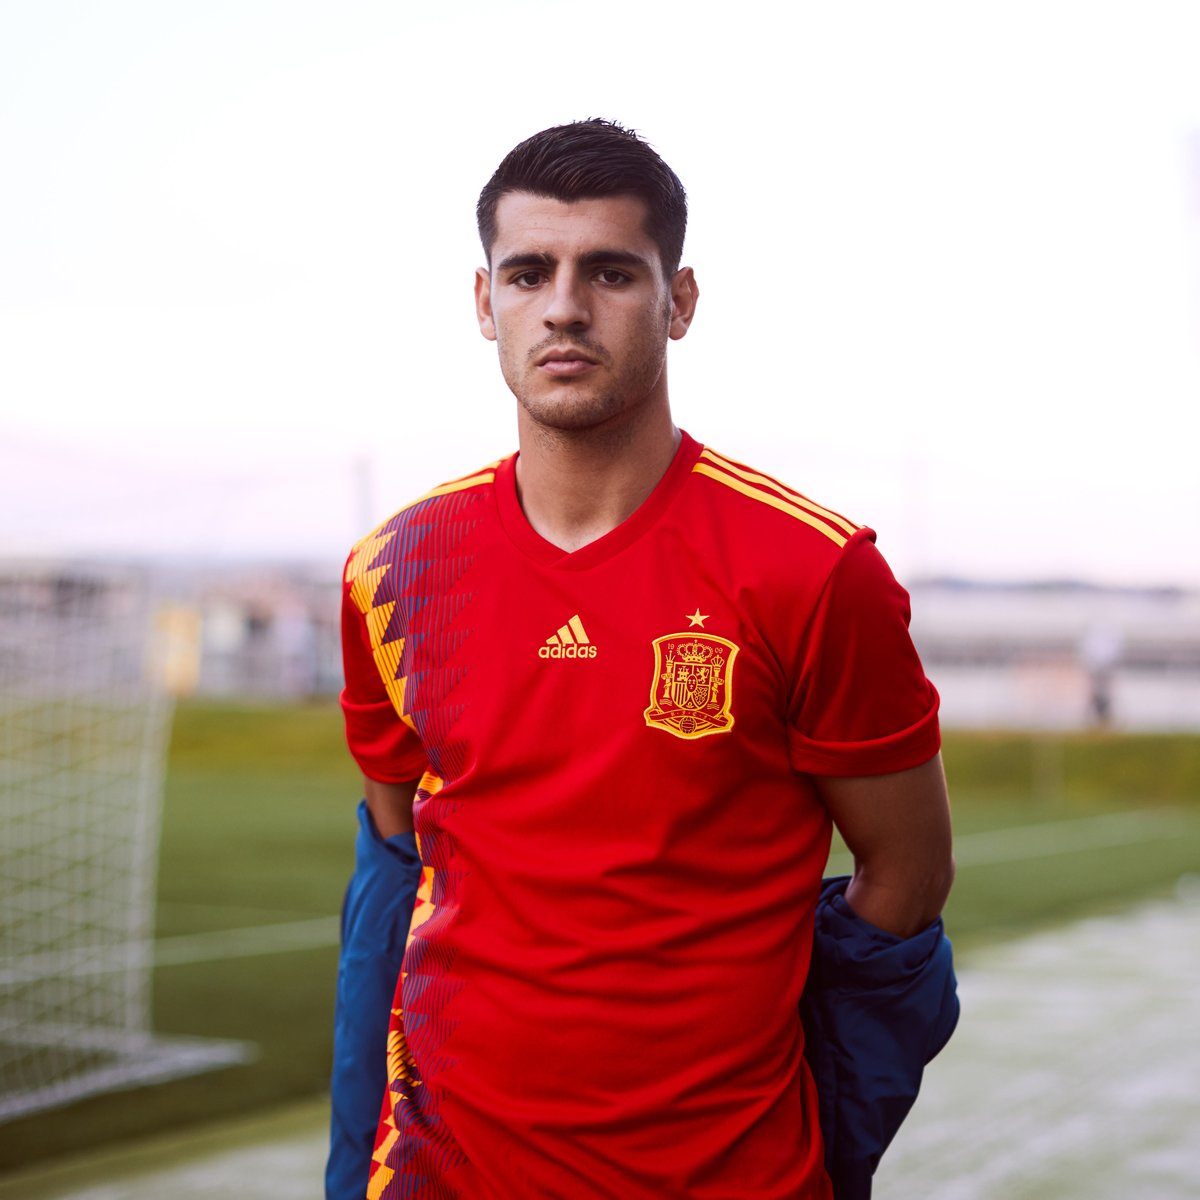 الكشف عن قميص المنتخب الإسباني في مونديال روسيا 2018